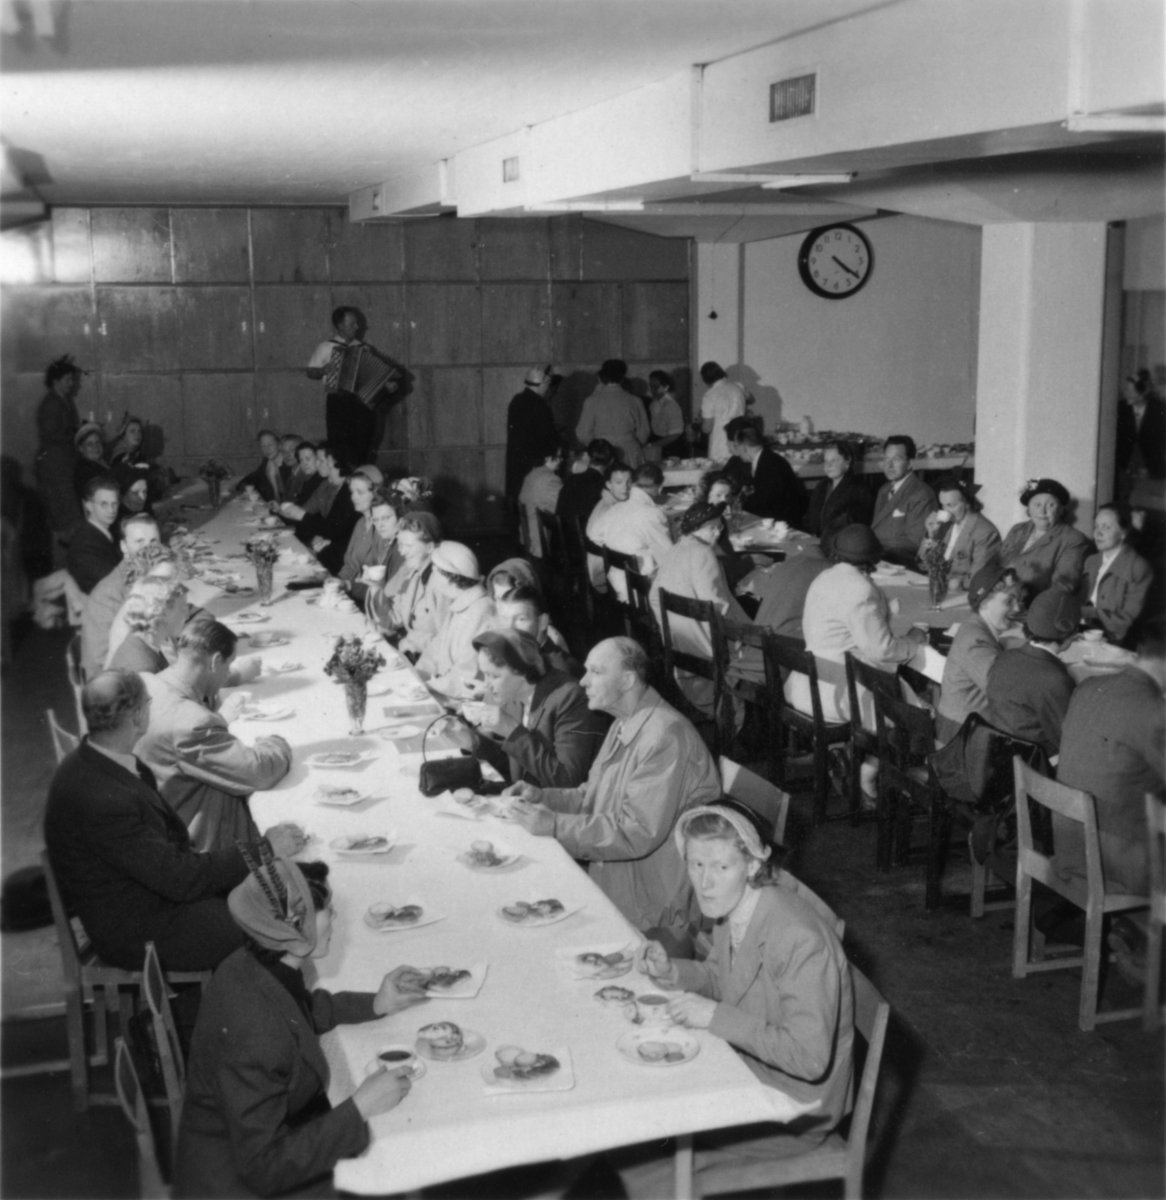 Fabriksvisning för anställdas anhöriga den 19 maj 1953.
Grupp okända personer.